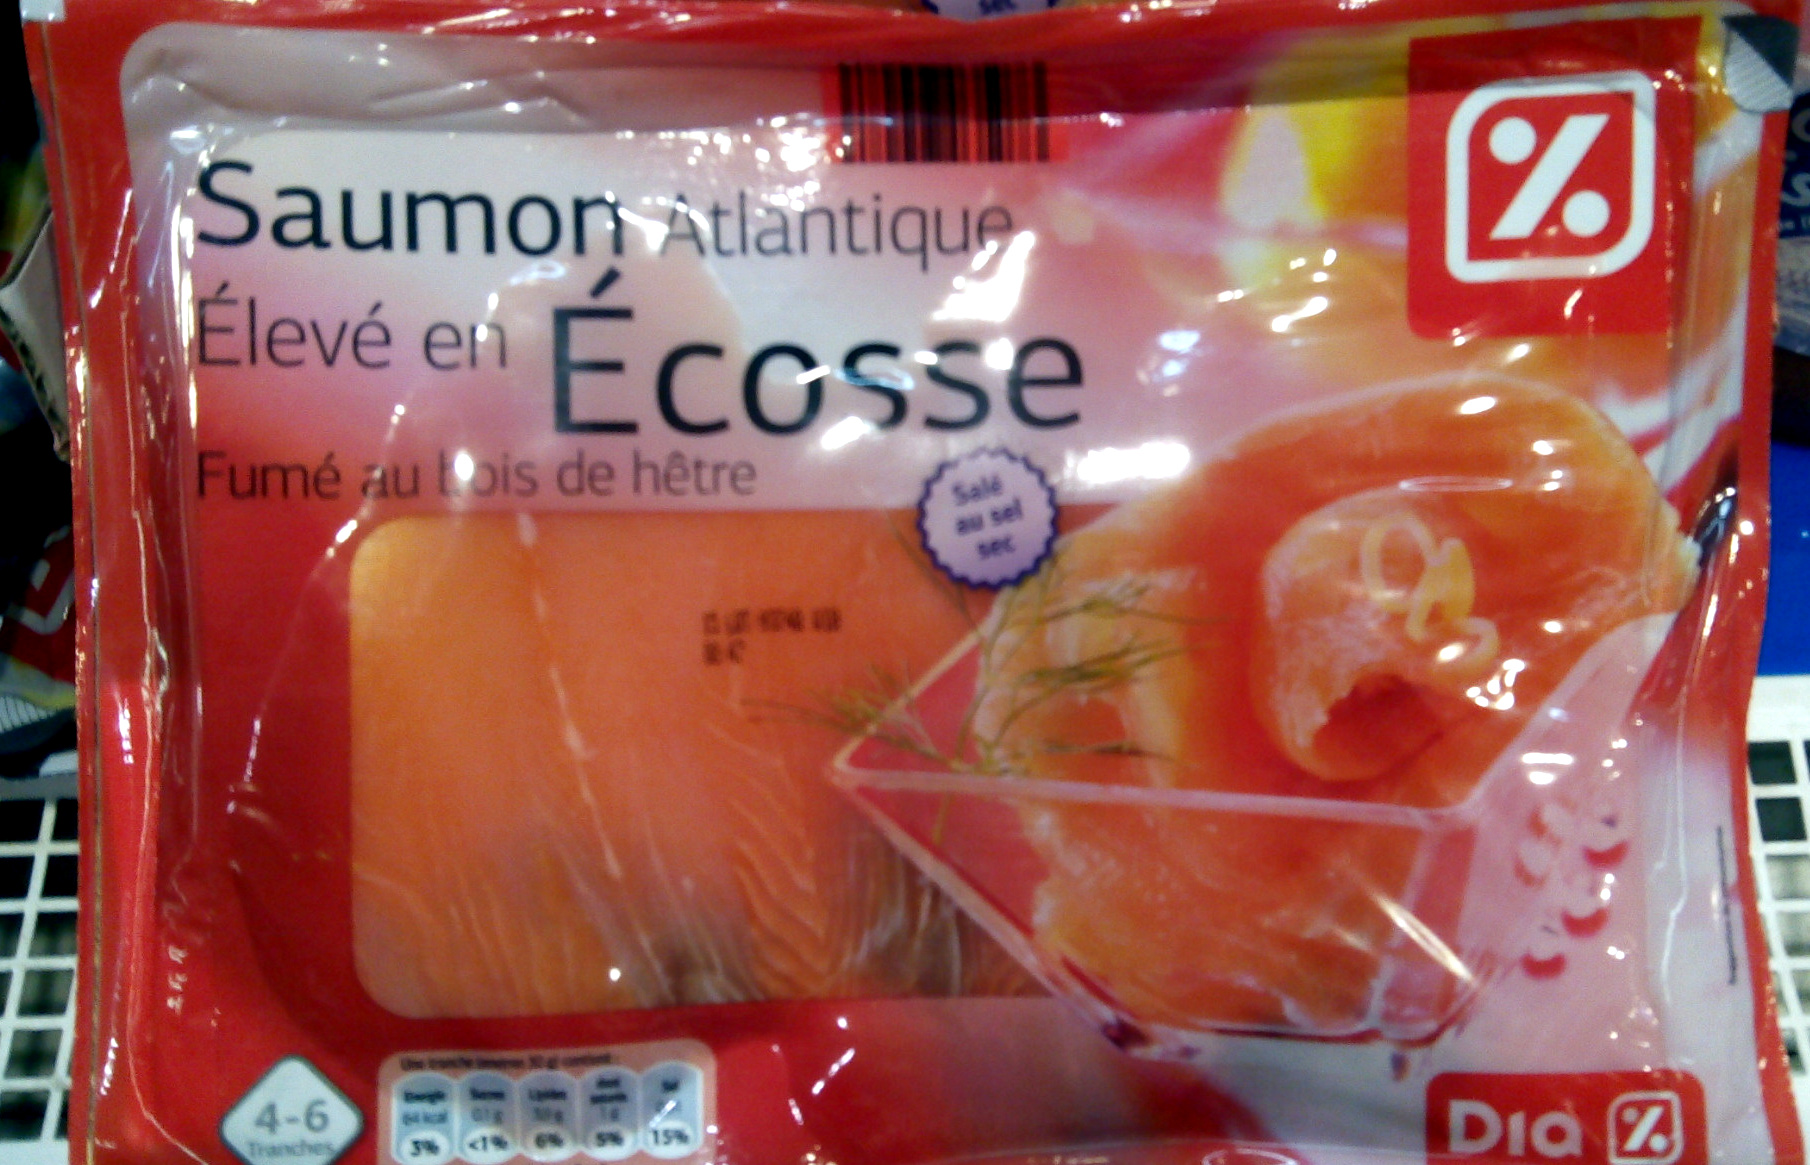 Saumon atlantique élevé en écosse 4-6 tranches - Product - fr